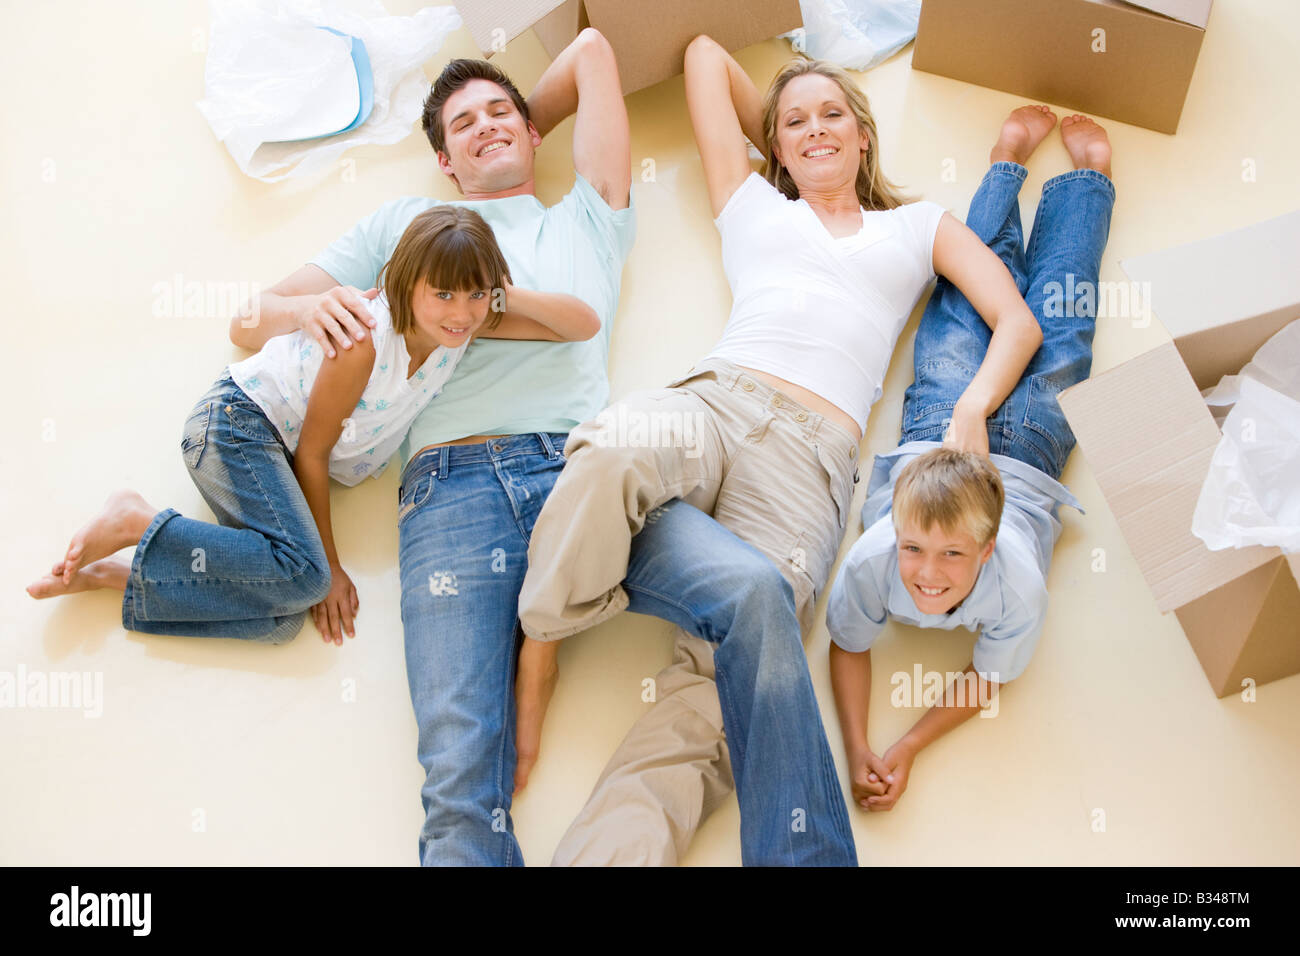 Familie im neuen Hause lächelnd am Boden durch offene Boxen liegend Stockfoto